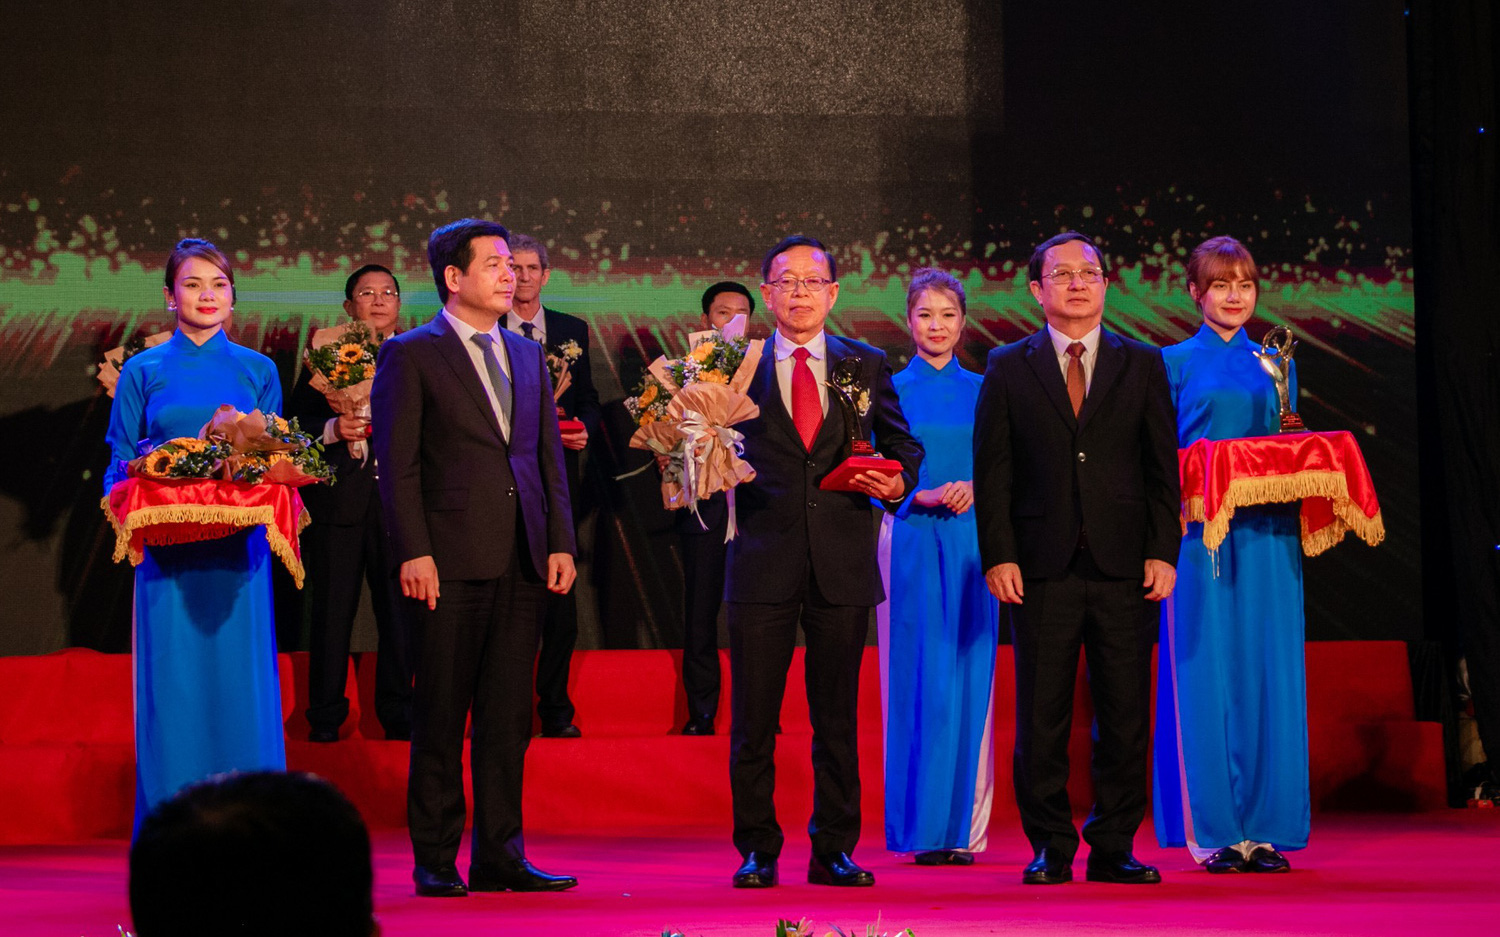 C.P. Việt Nam đạt Giải Vàng Chất lượng Quốc gia năm 2020